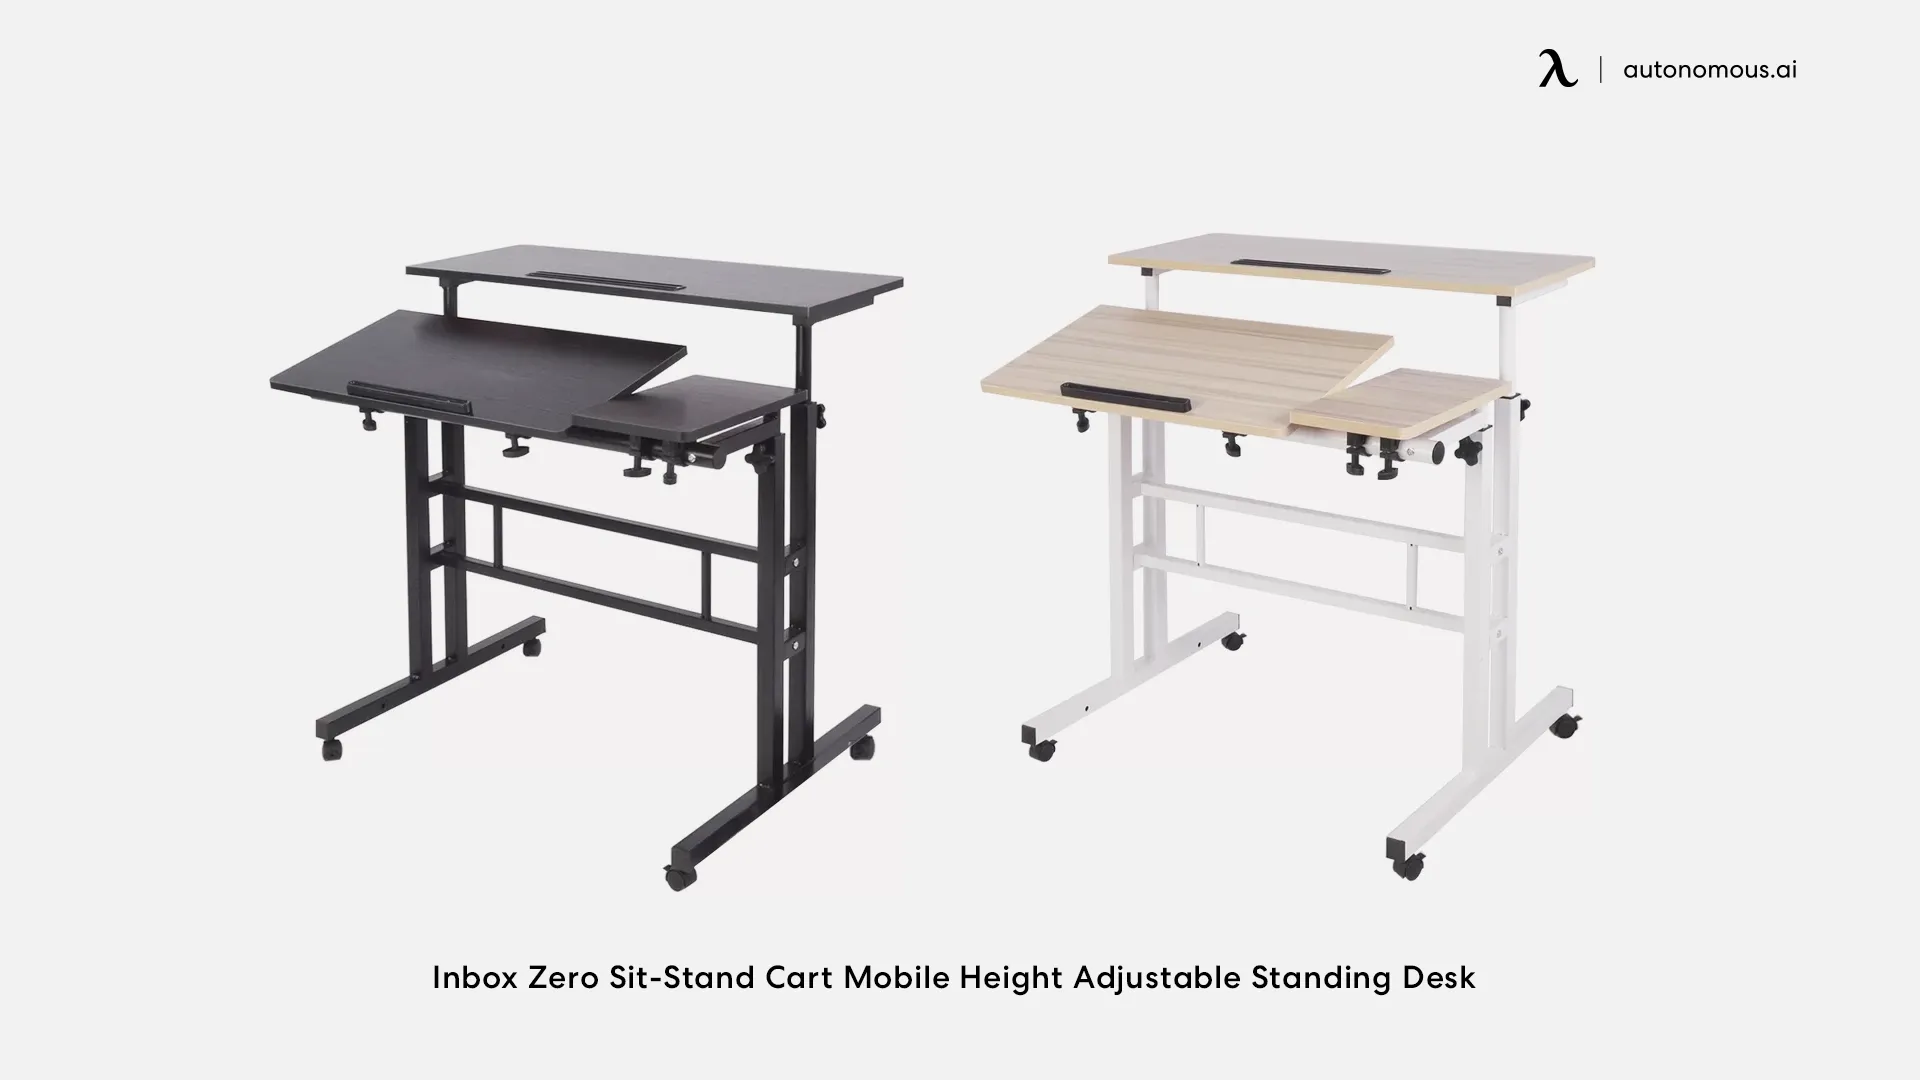 Inbox Zero Sit-Stand Cart Mobile Height Adjustable Standing Desk